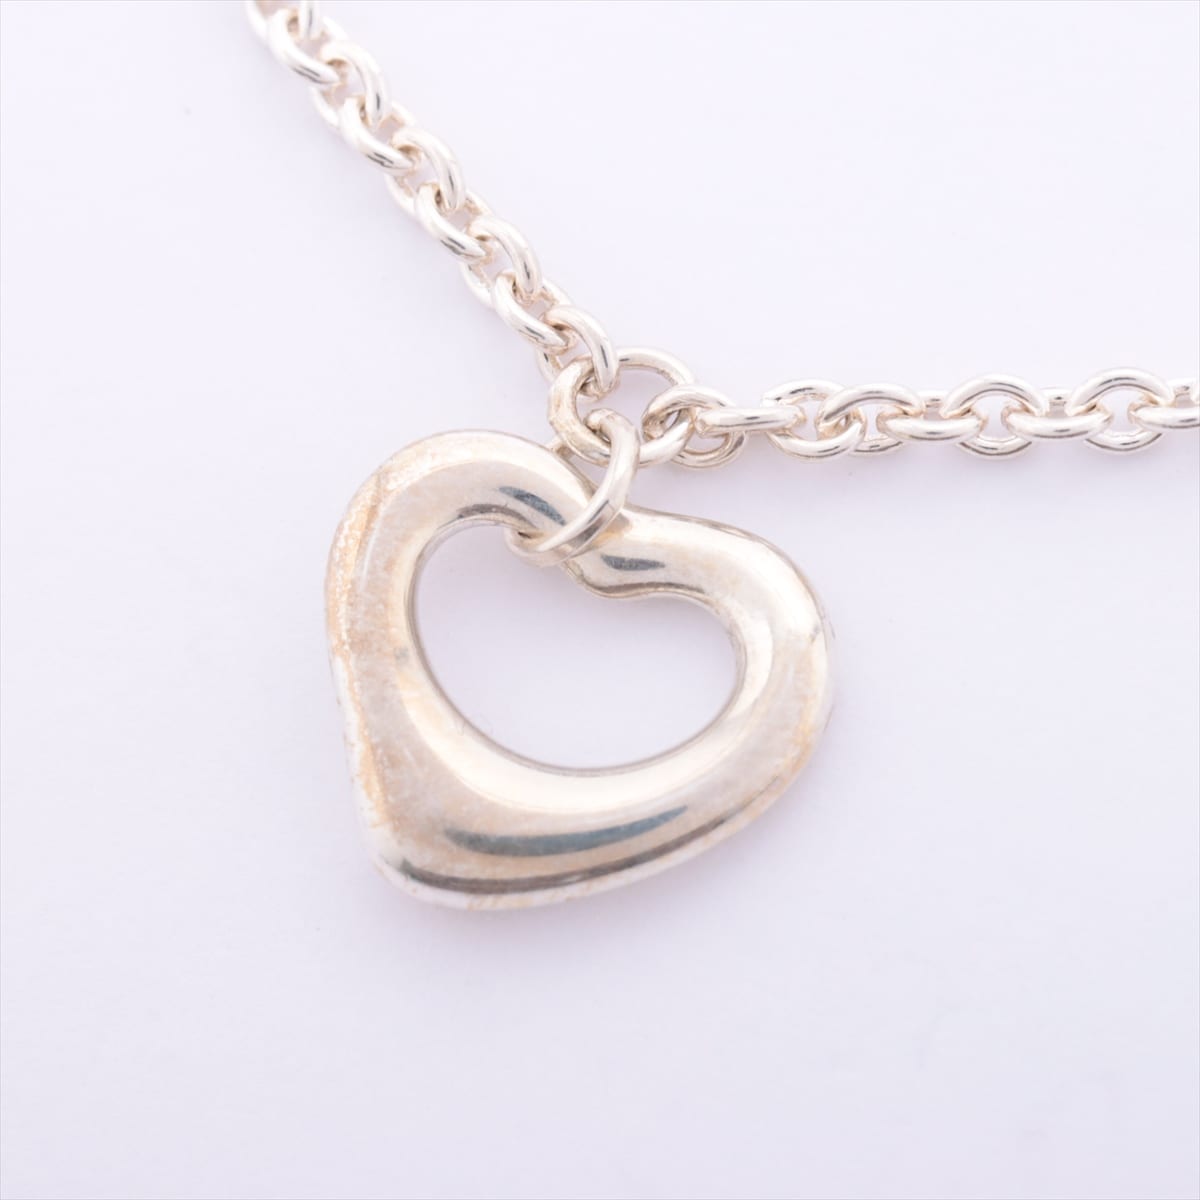 Tiffany Open Heart Bracelet 925 2.5g Silver